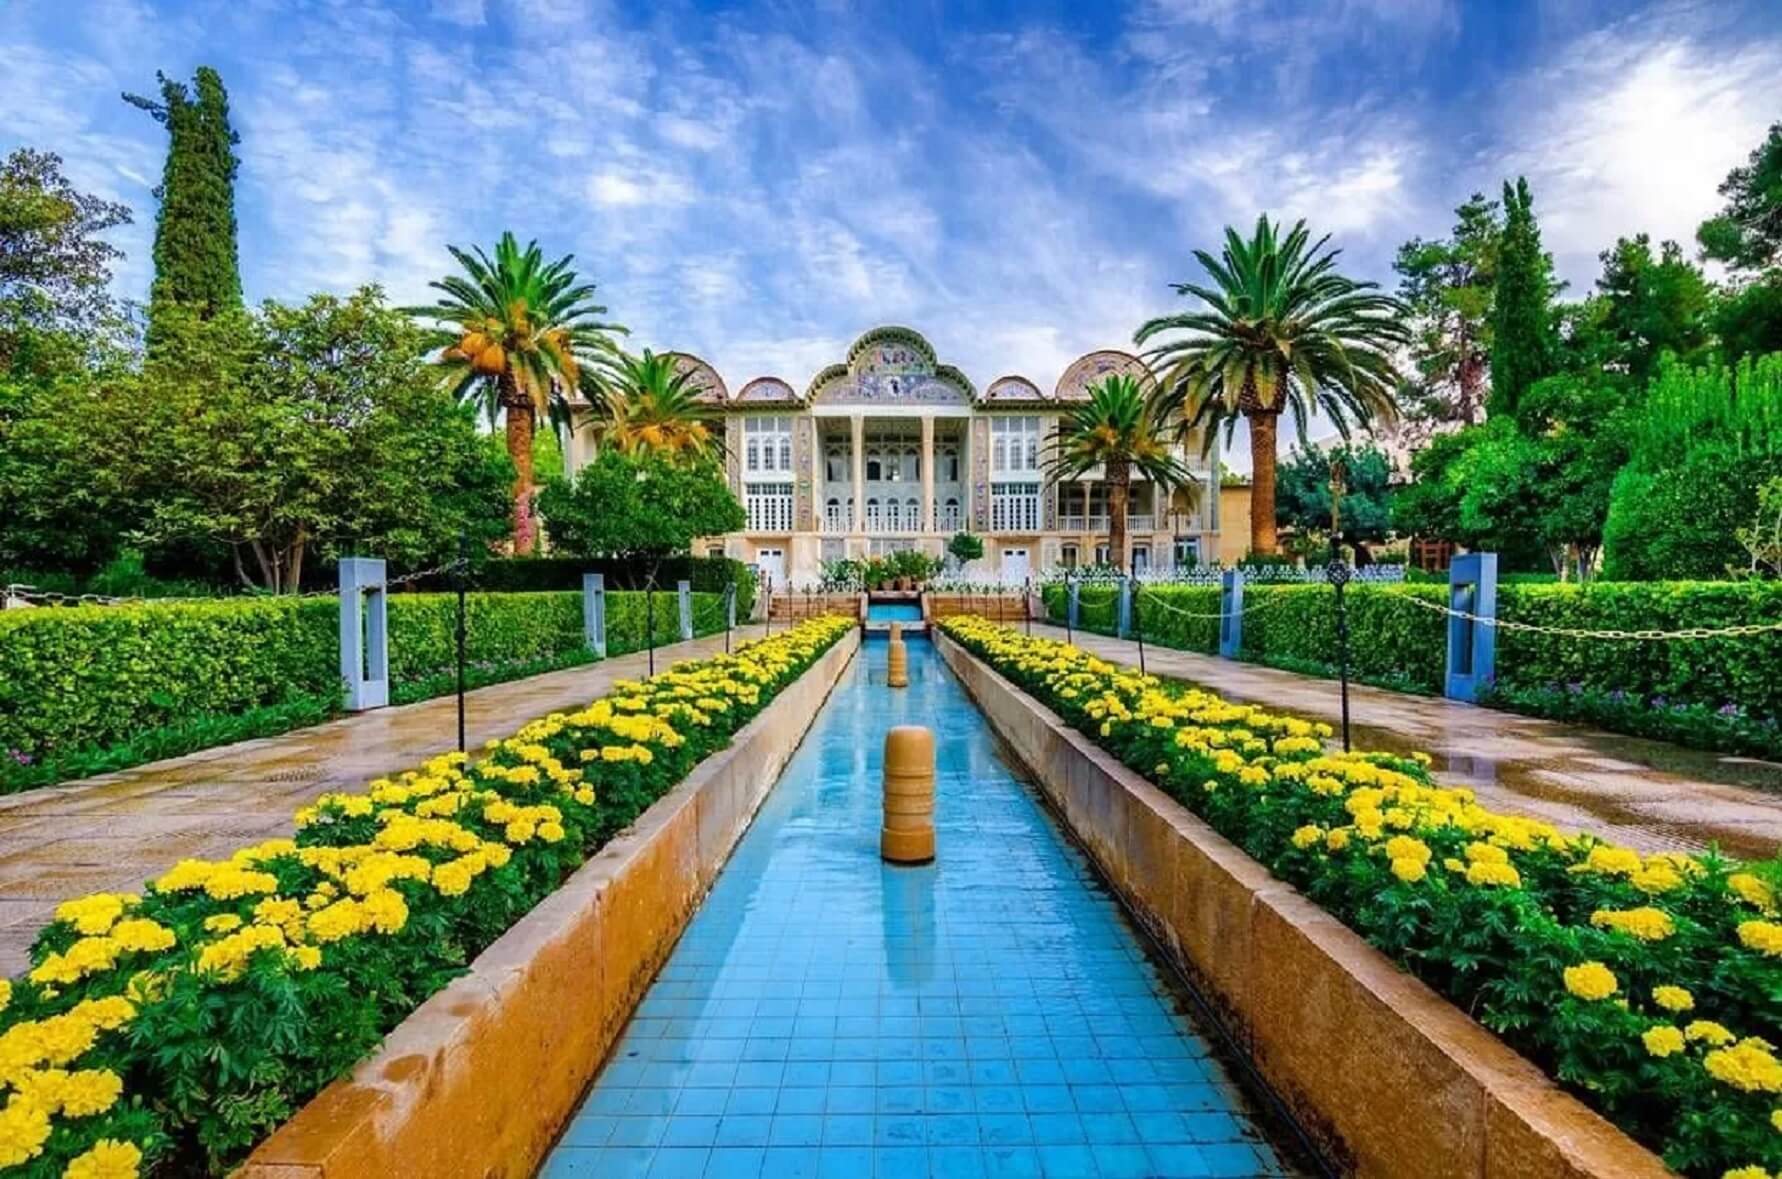 بهترین هتل های شیراز از نظر مسافران؛ لیست هتل های شیراز + امکانات